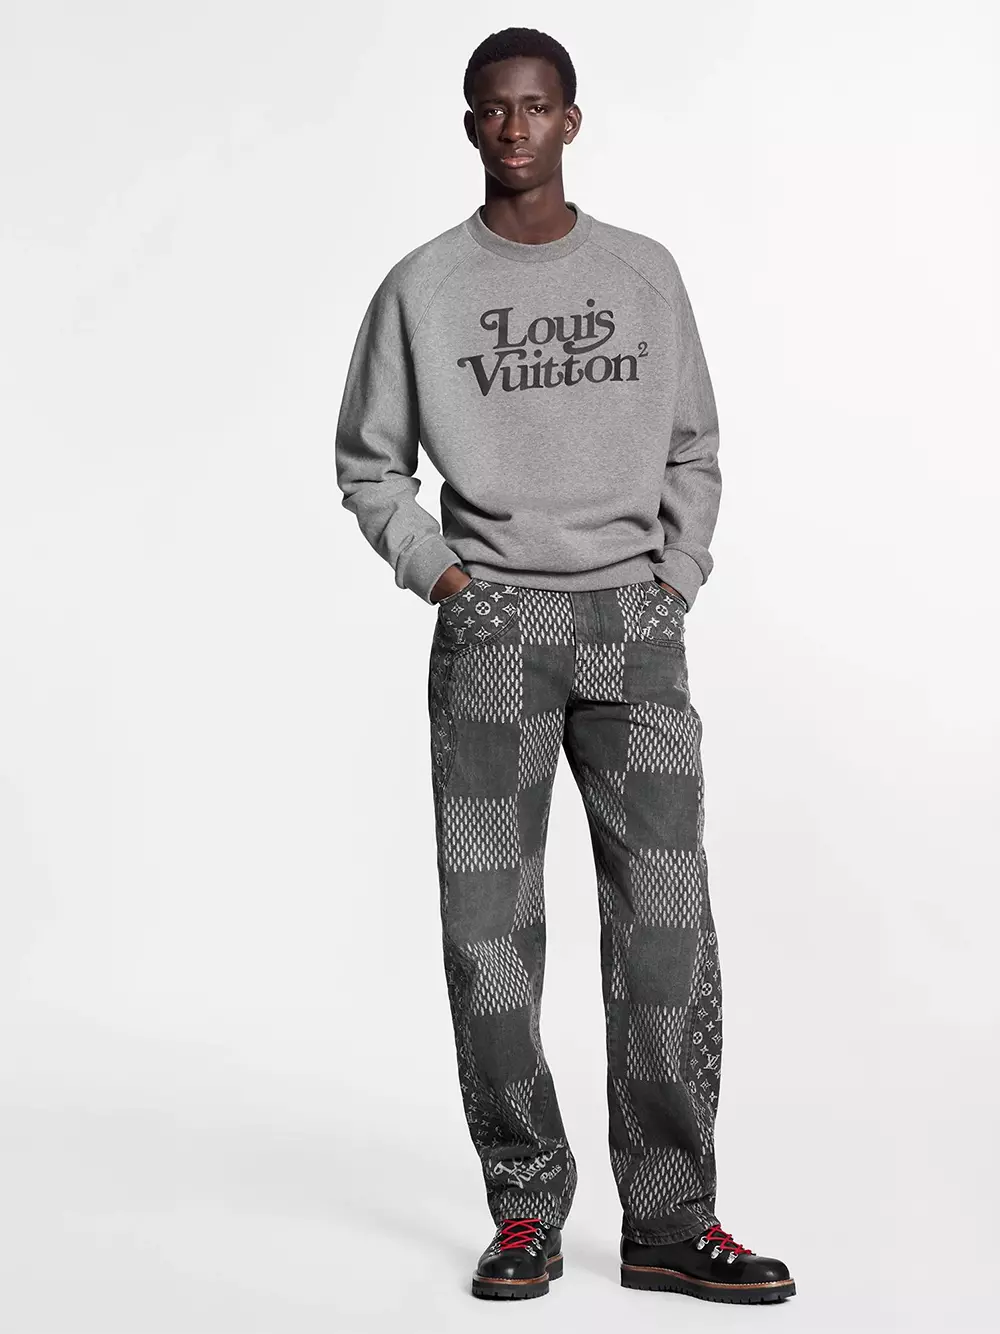 Louis Vuitton được biết đến là thương hiệu global brand đẳng cấp quốc tế